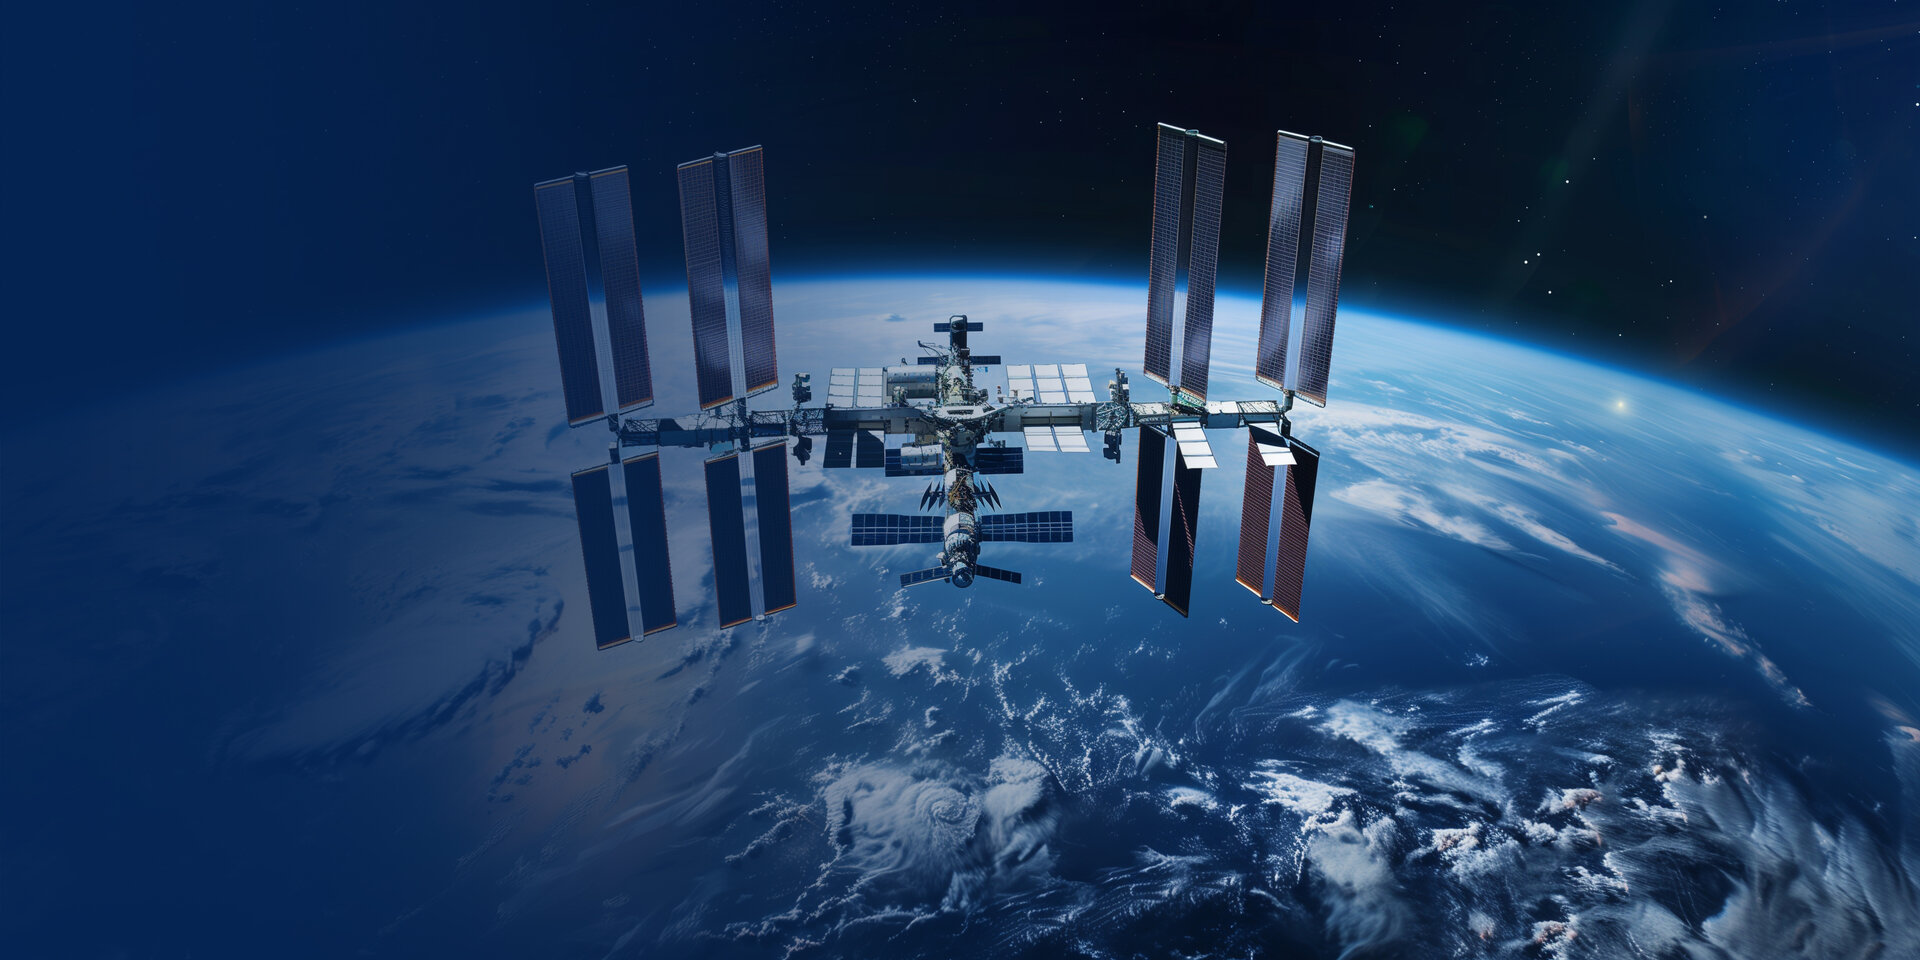 Die ISS schwebend im Weltraum, mit unserer schönen Erde im Hintergrund